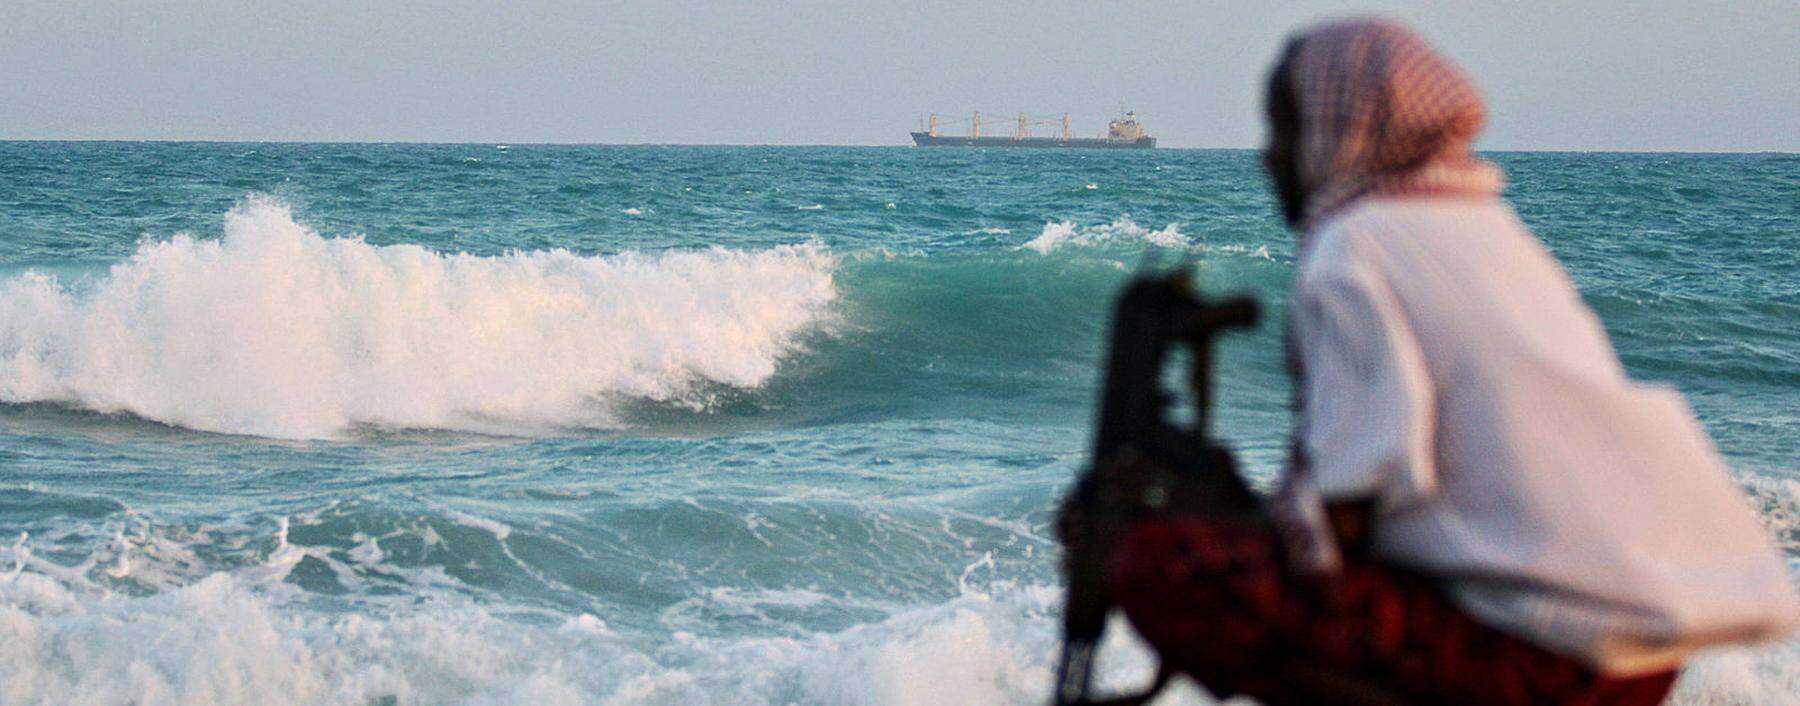 Lang galt die Küstenregion Somalias als Hotspot der Piraterie. Doch mittlerweile finden die meisten Entführungen im Golf von Guinea statt, in der Nähe von Nigeria. 